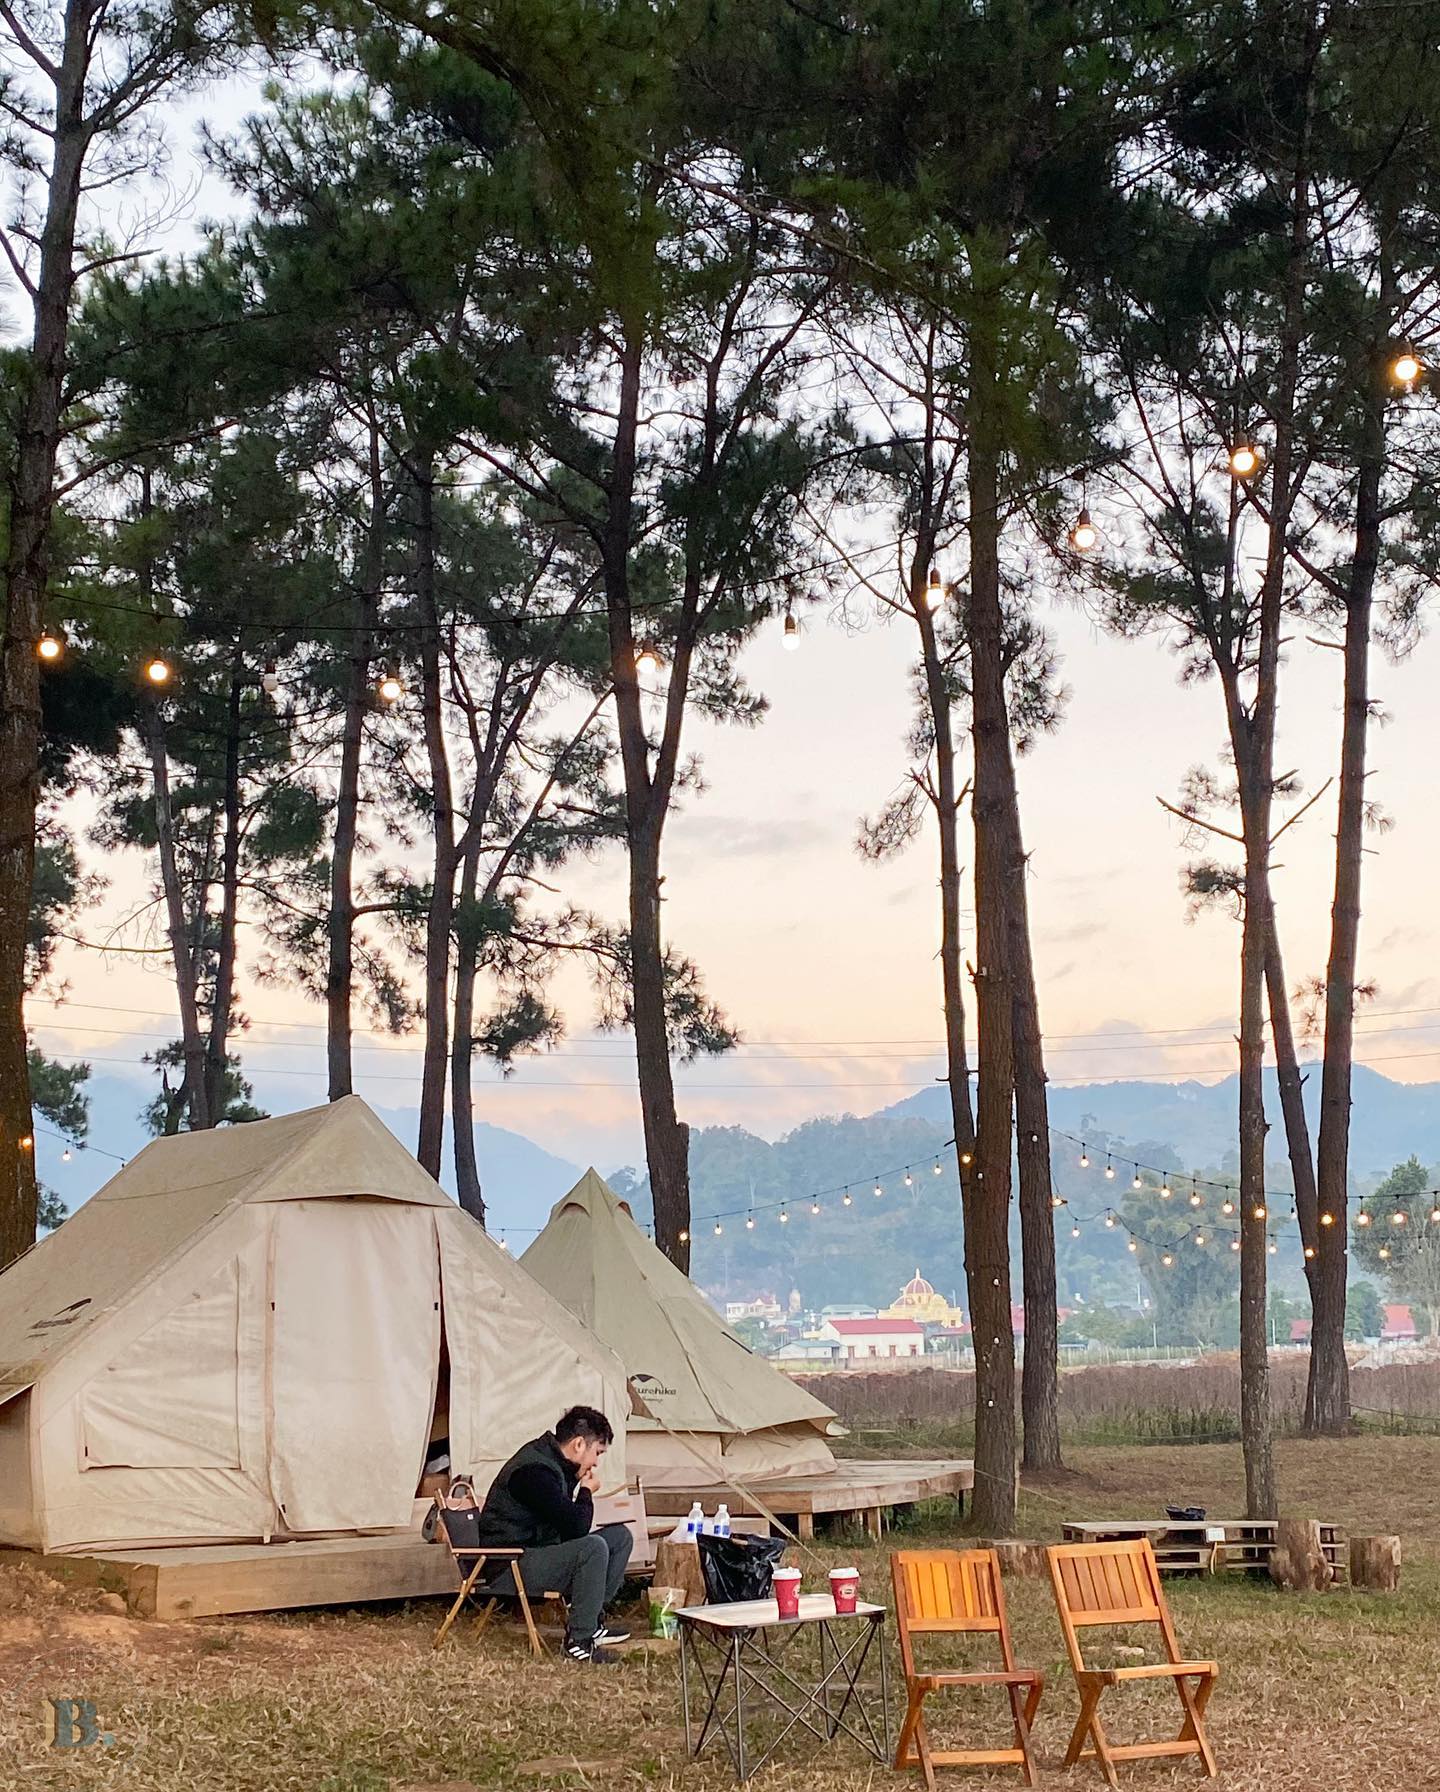 Phoenix Camp Ground - Khám phá khu camping mới toanh giữa rừng thông tại Mộc Châu